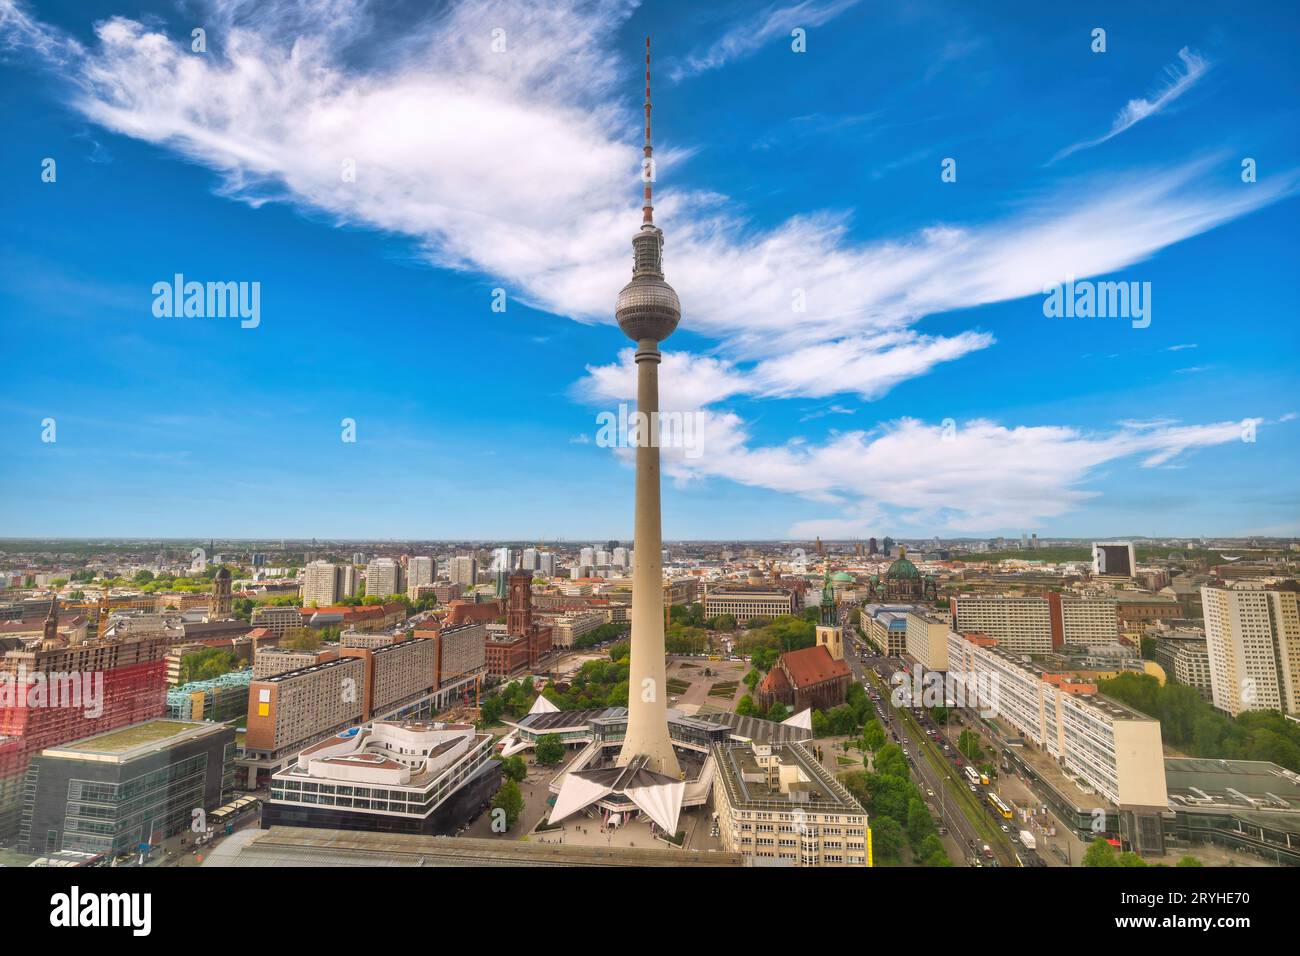 Berlino Germania, skyline della città ad Alexanderplatz e Torre della televisione Foto Stock